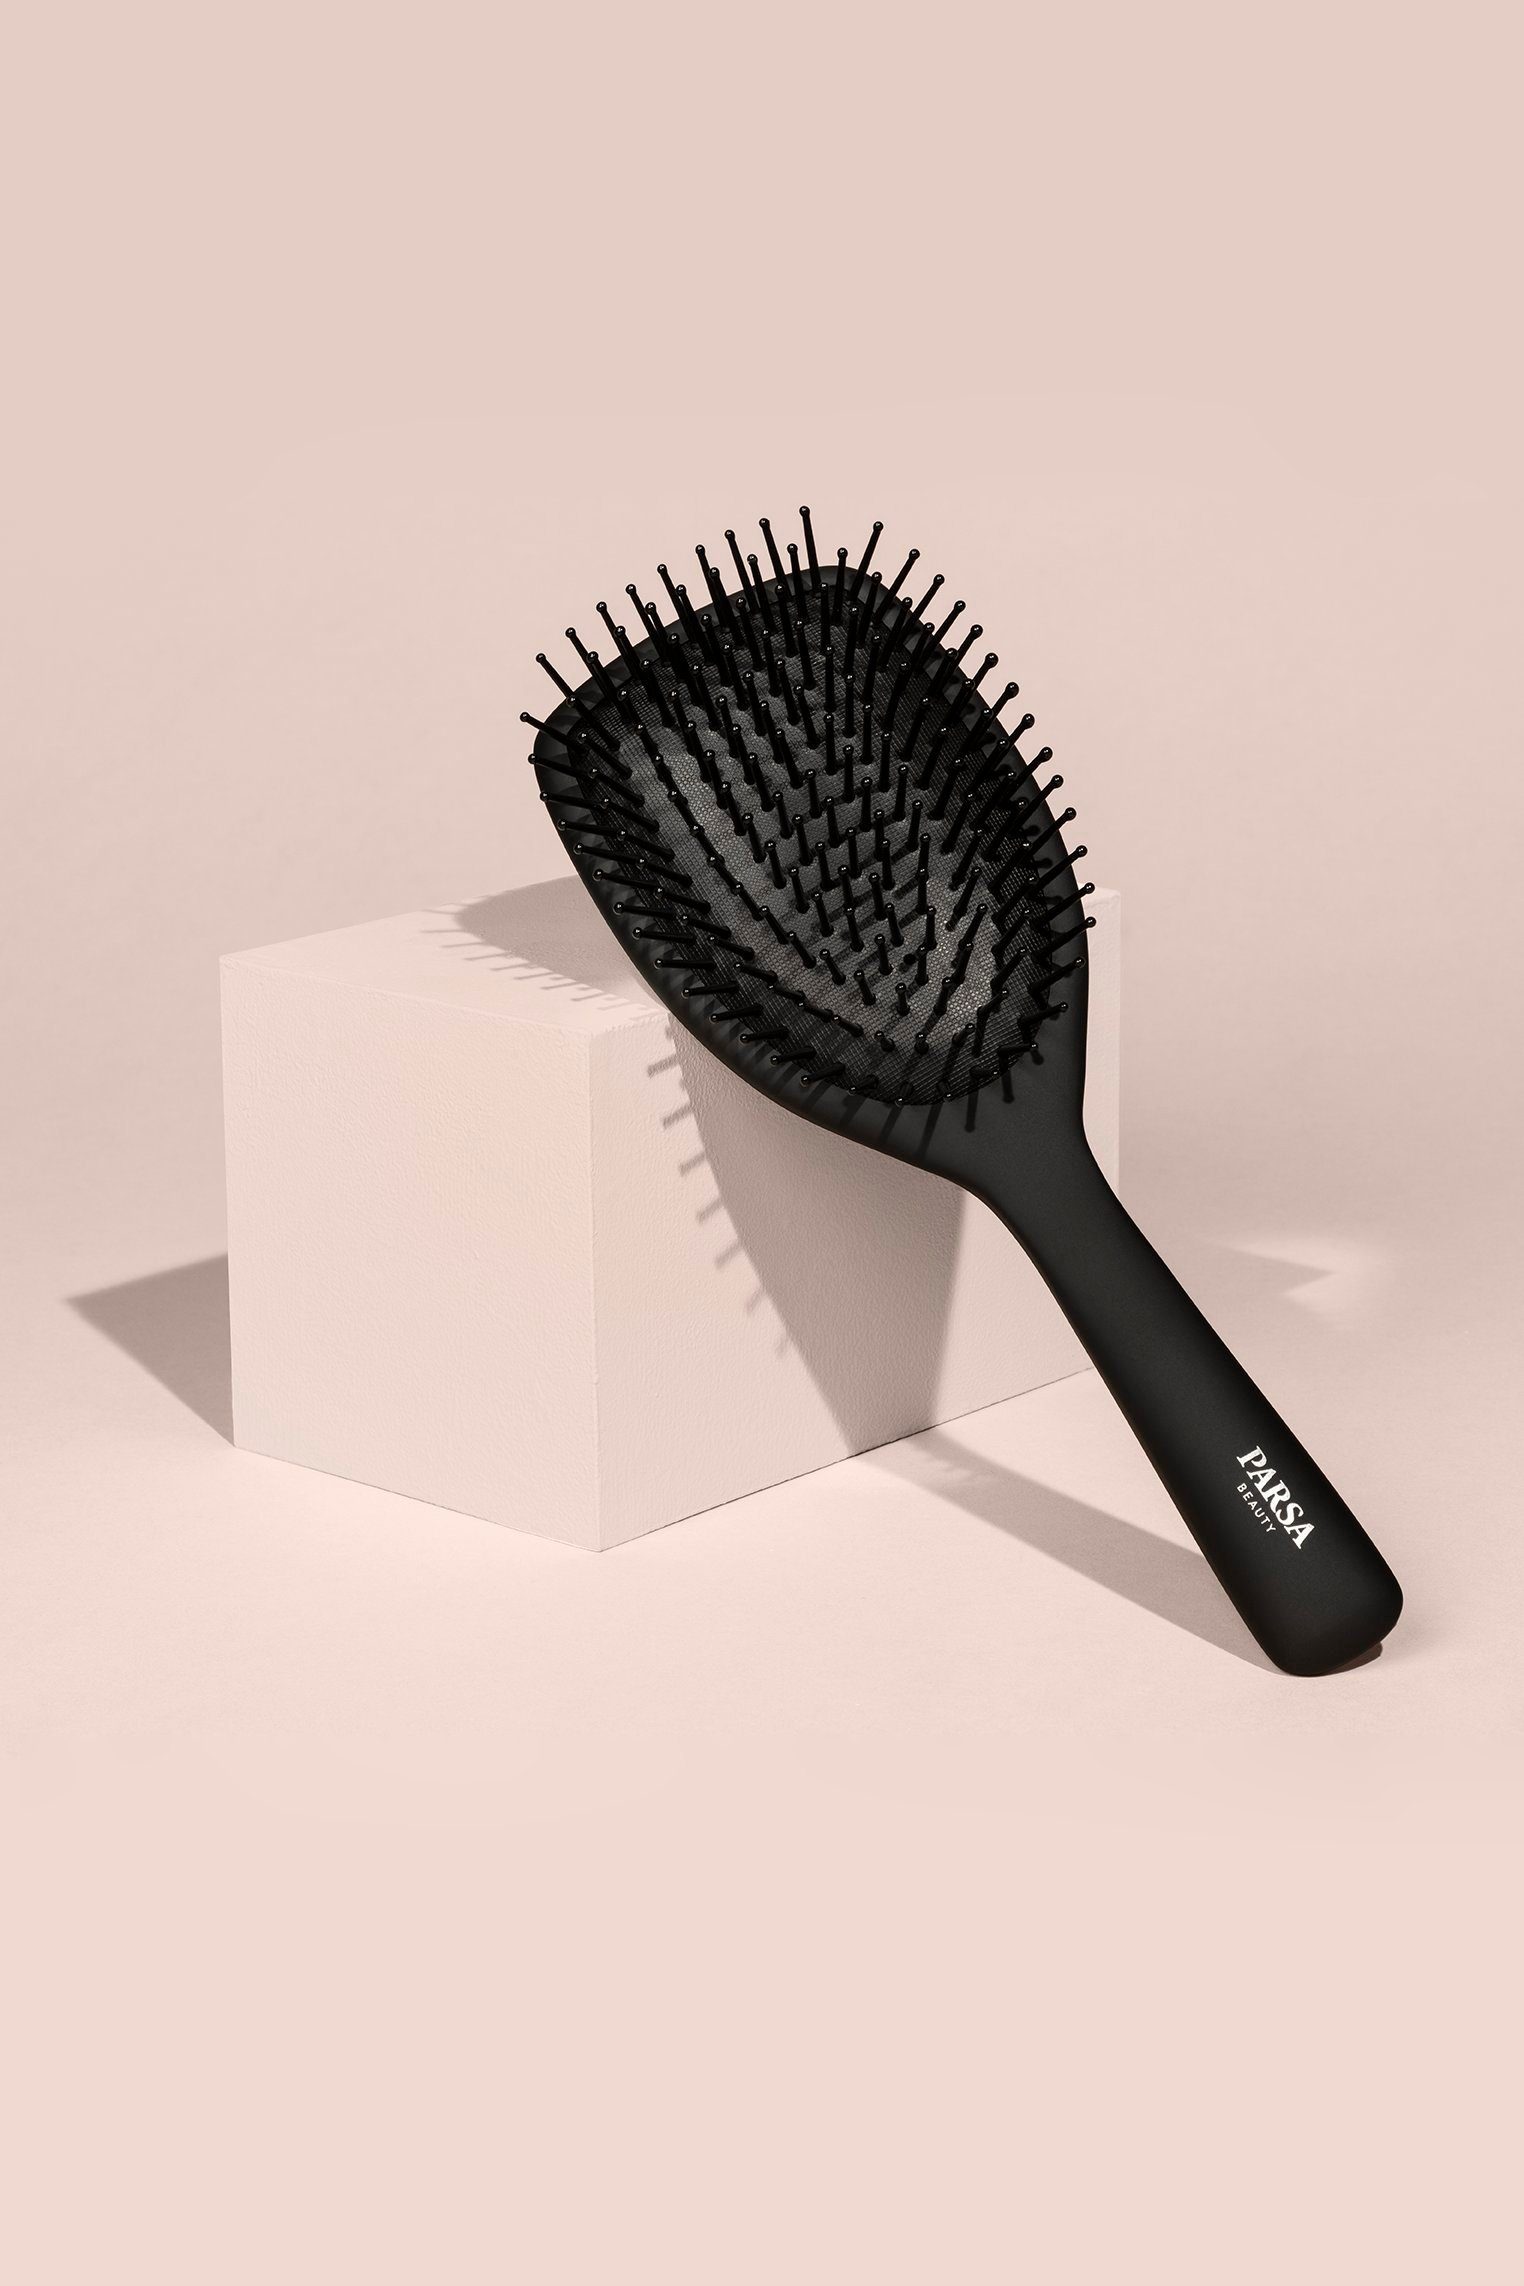 groß Haarbürste PARSA Carbon Haarbürste Beauty und Turmalin